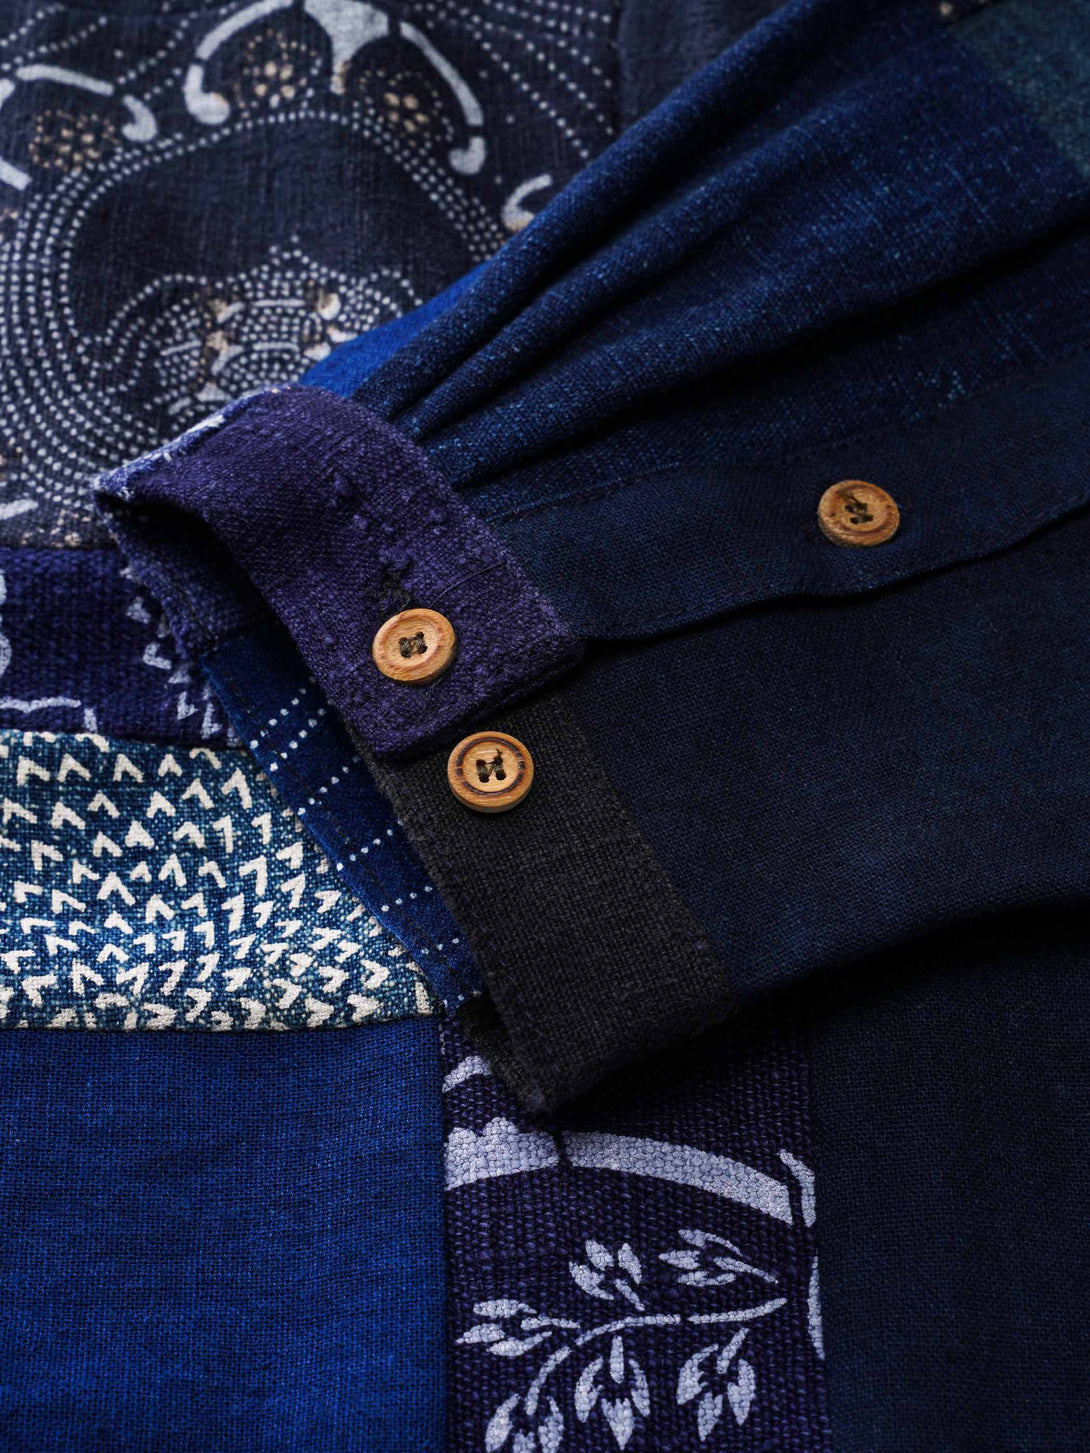 藍染めロングスリーブTシャツのカスタムメイド天然竹製ボタン、Y字型の襟口と内部のテクスチャーデザイン